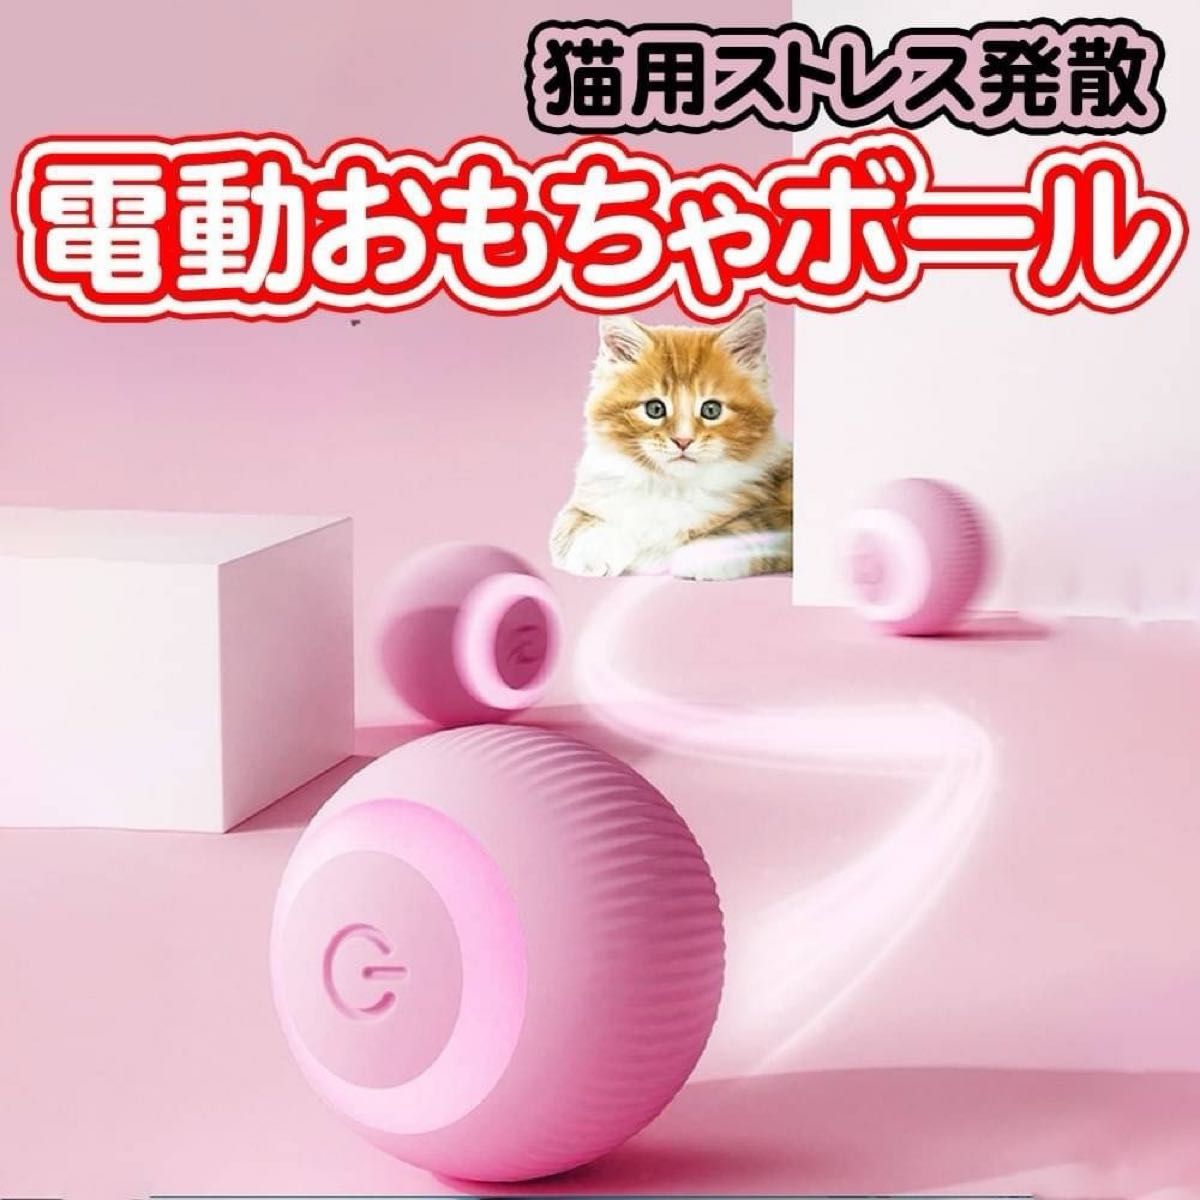 【新品】ペット用 フードボウル ピンク犬 猫 小動物 ケージ取り付け 固定式